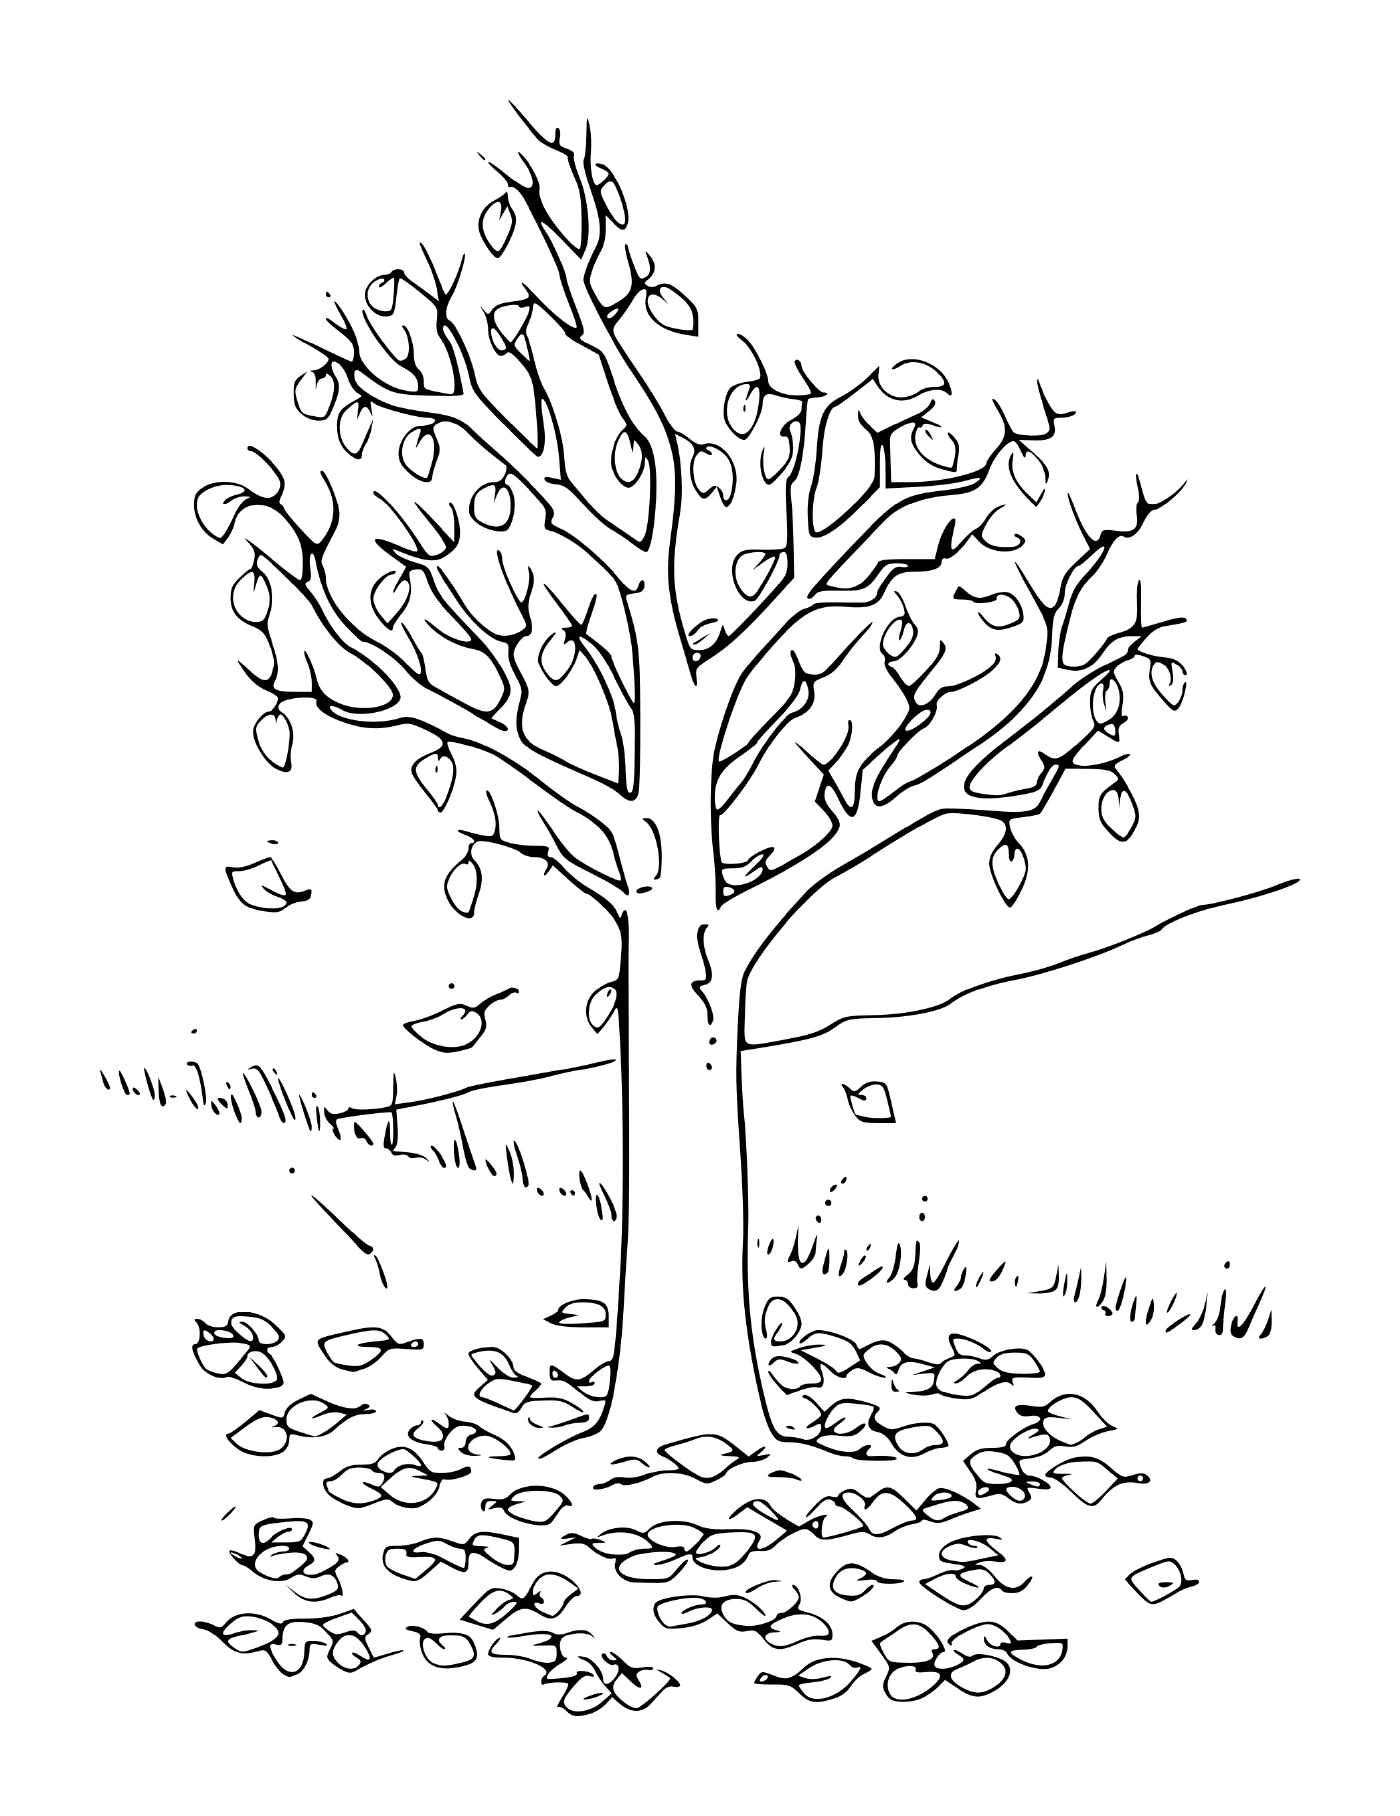  Осеннее дерево с листьями 